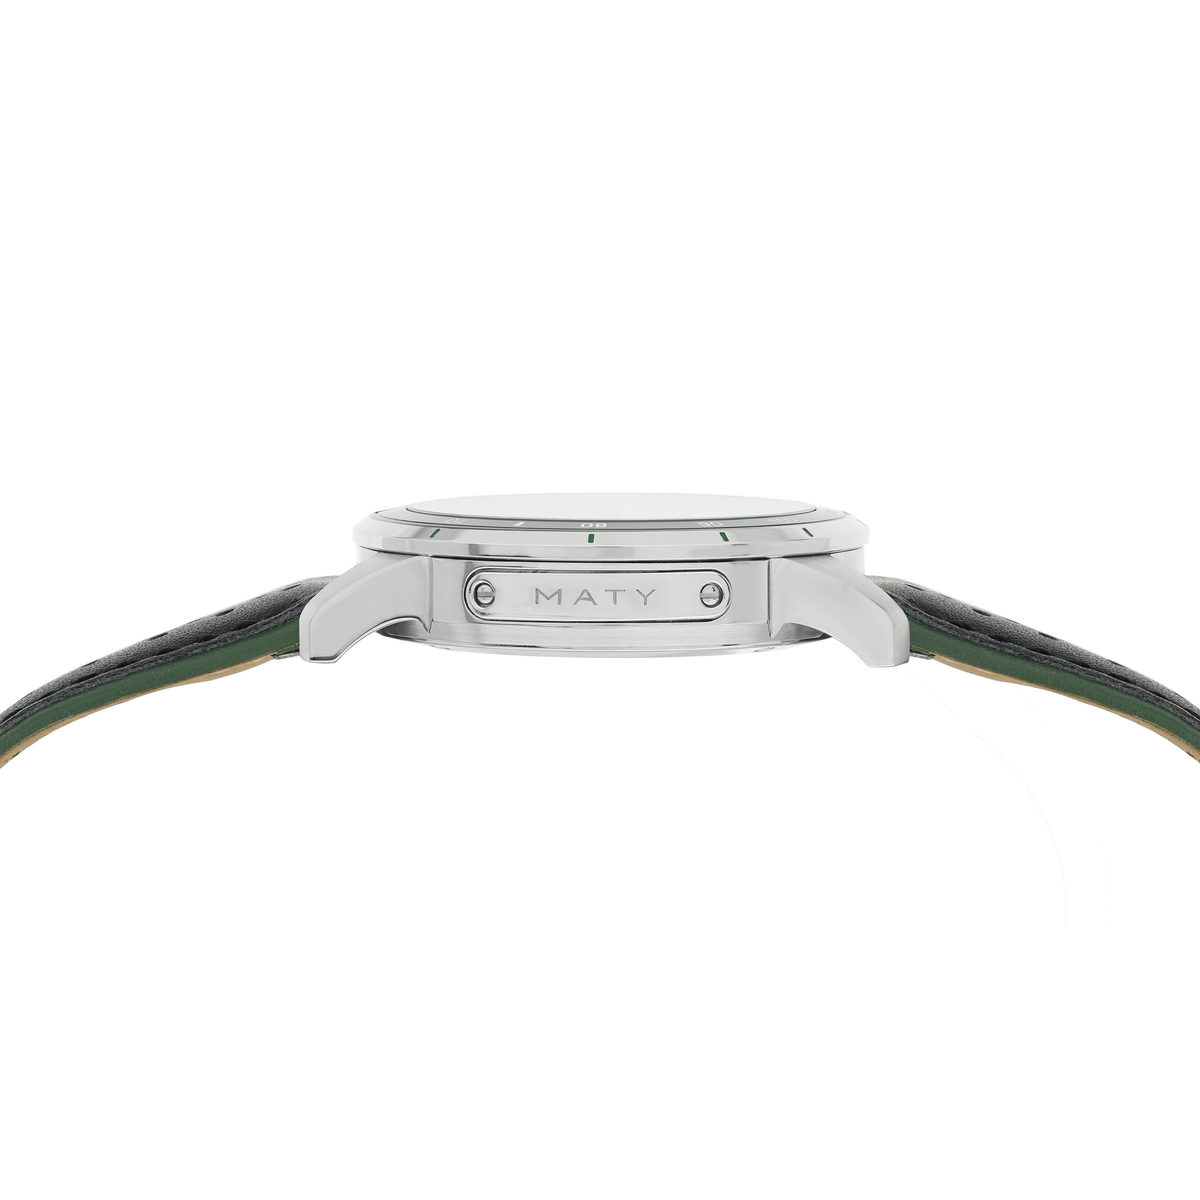 Montre MATY GM chronographe cadran vert bracelet cuir vert - vue 4